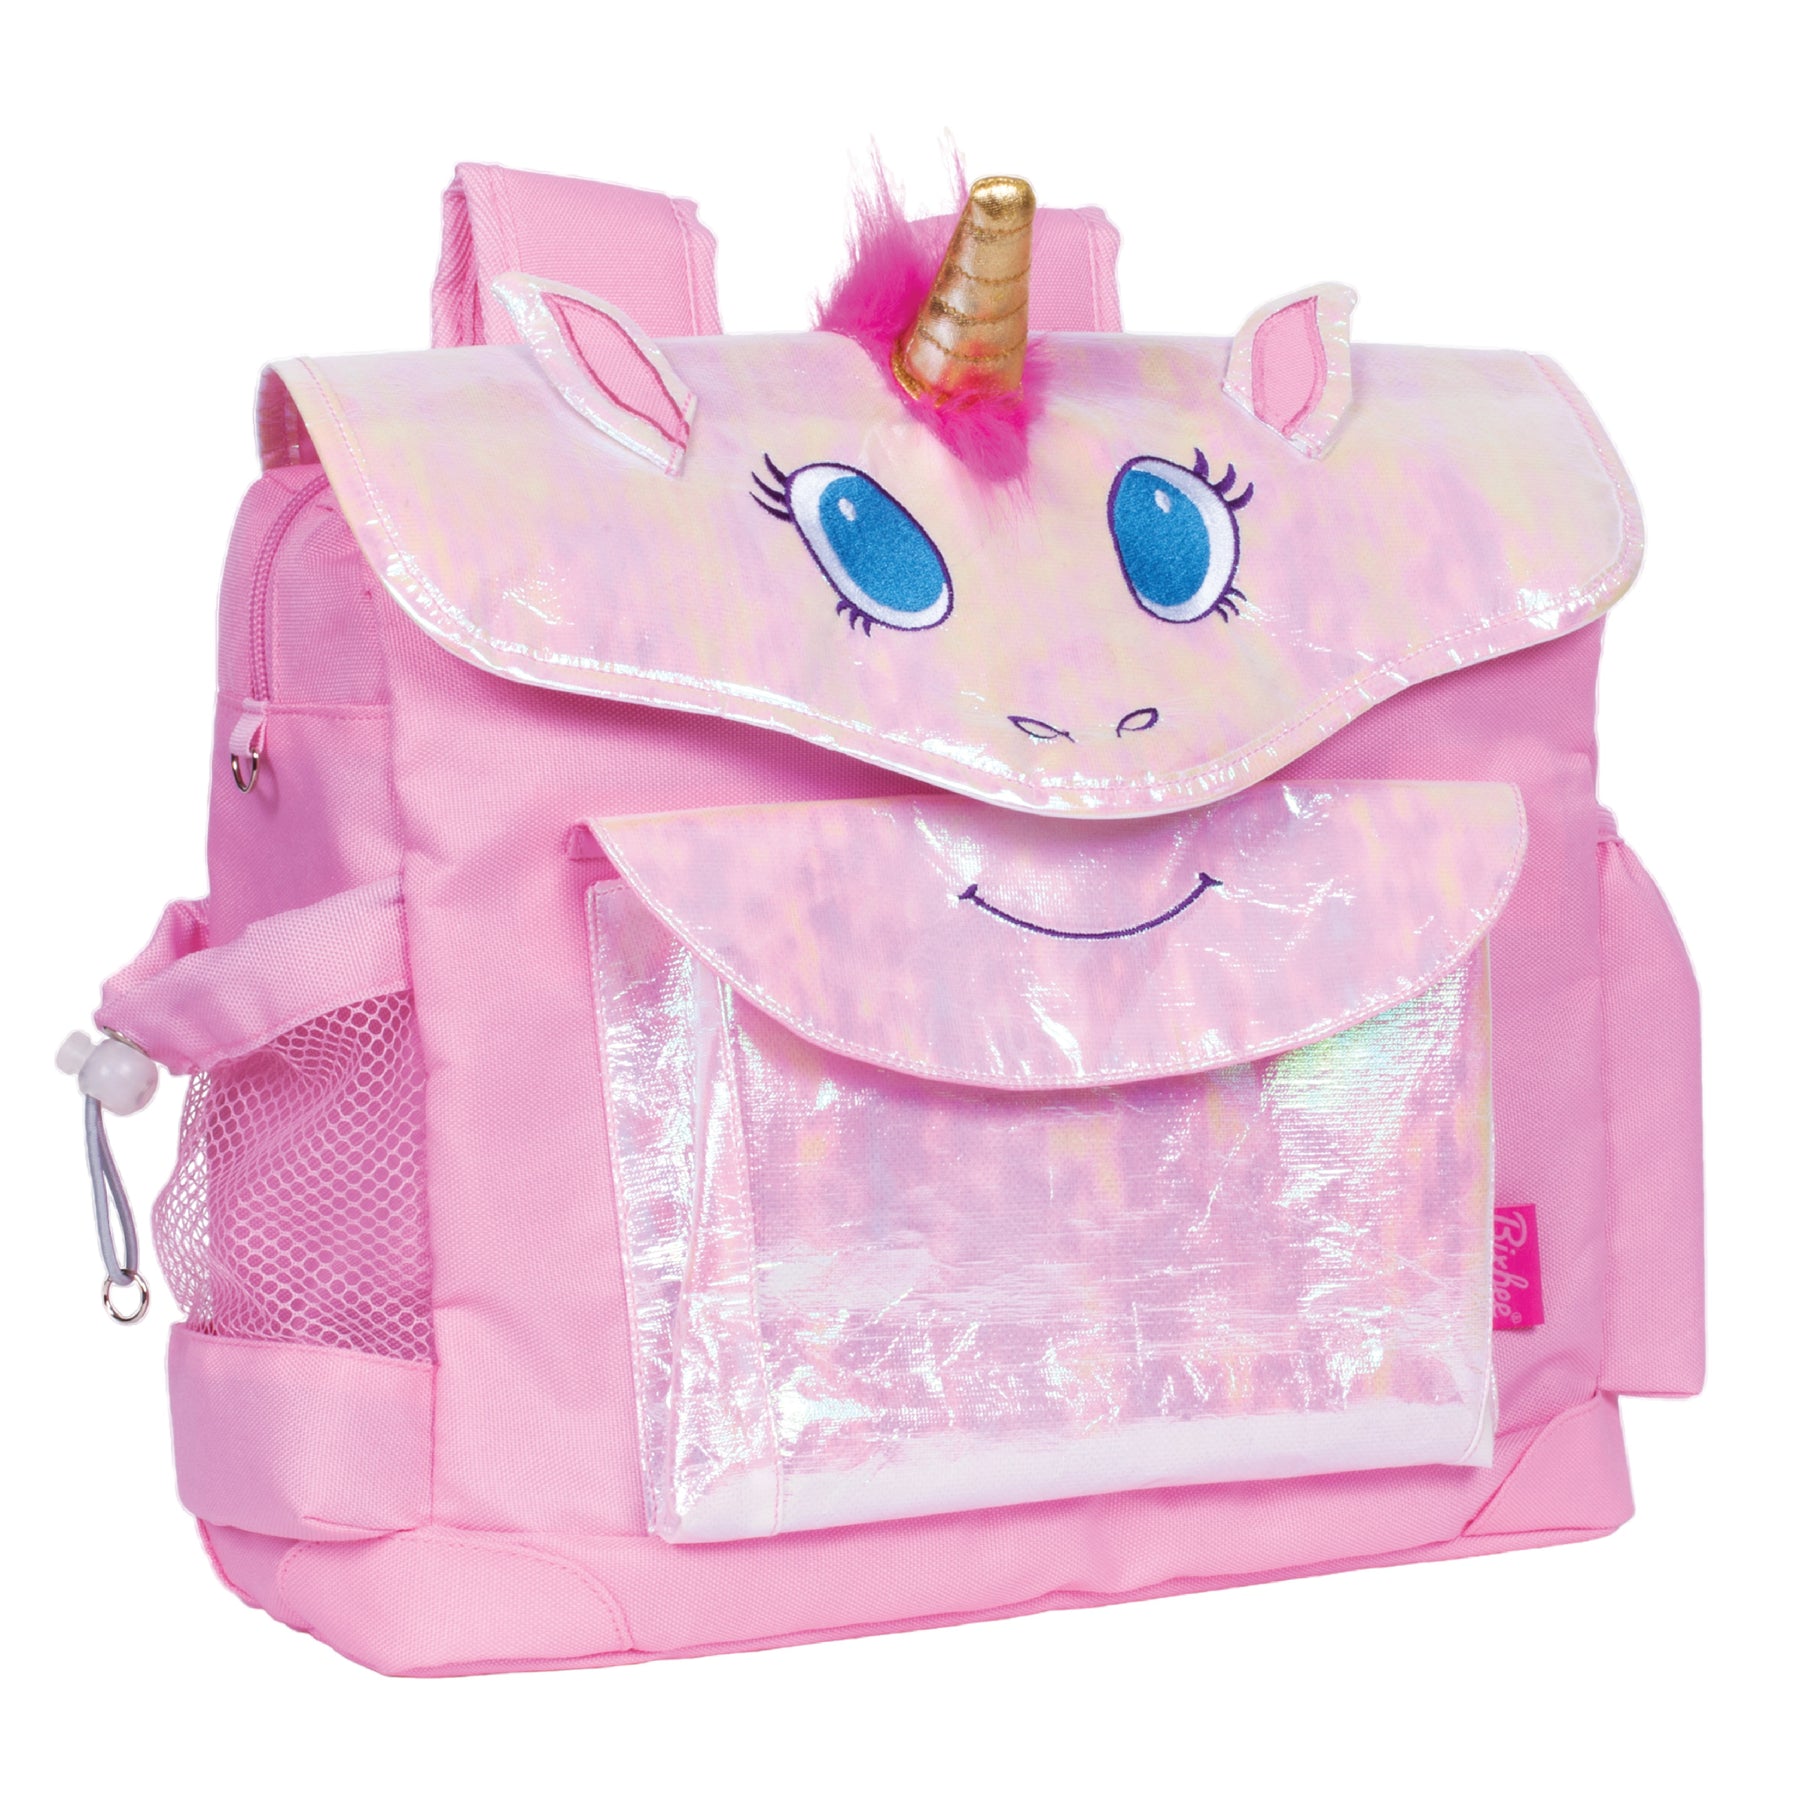 Bixbee Unicorn Sleeping Bag - Pink